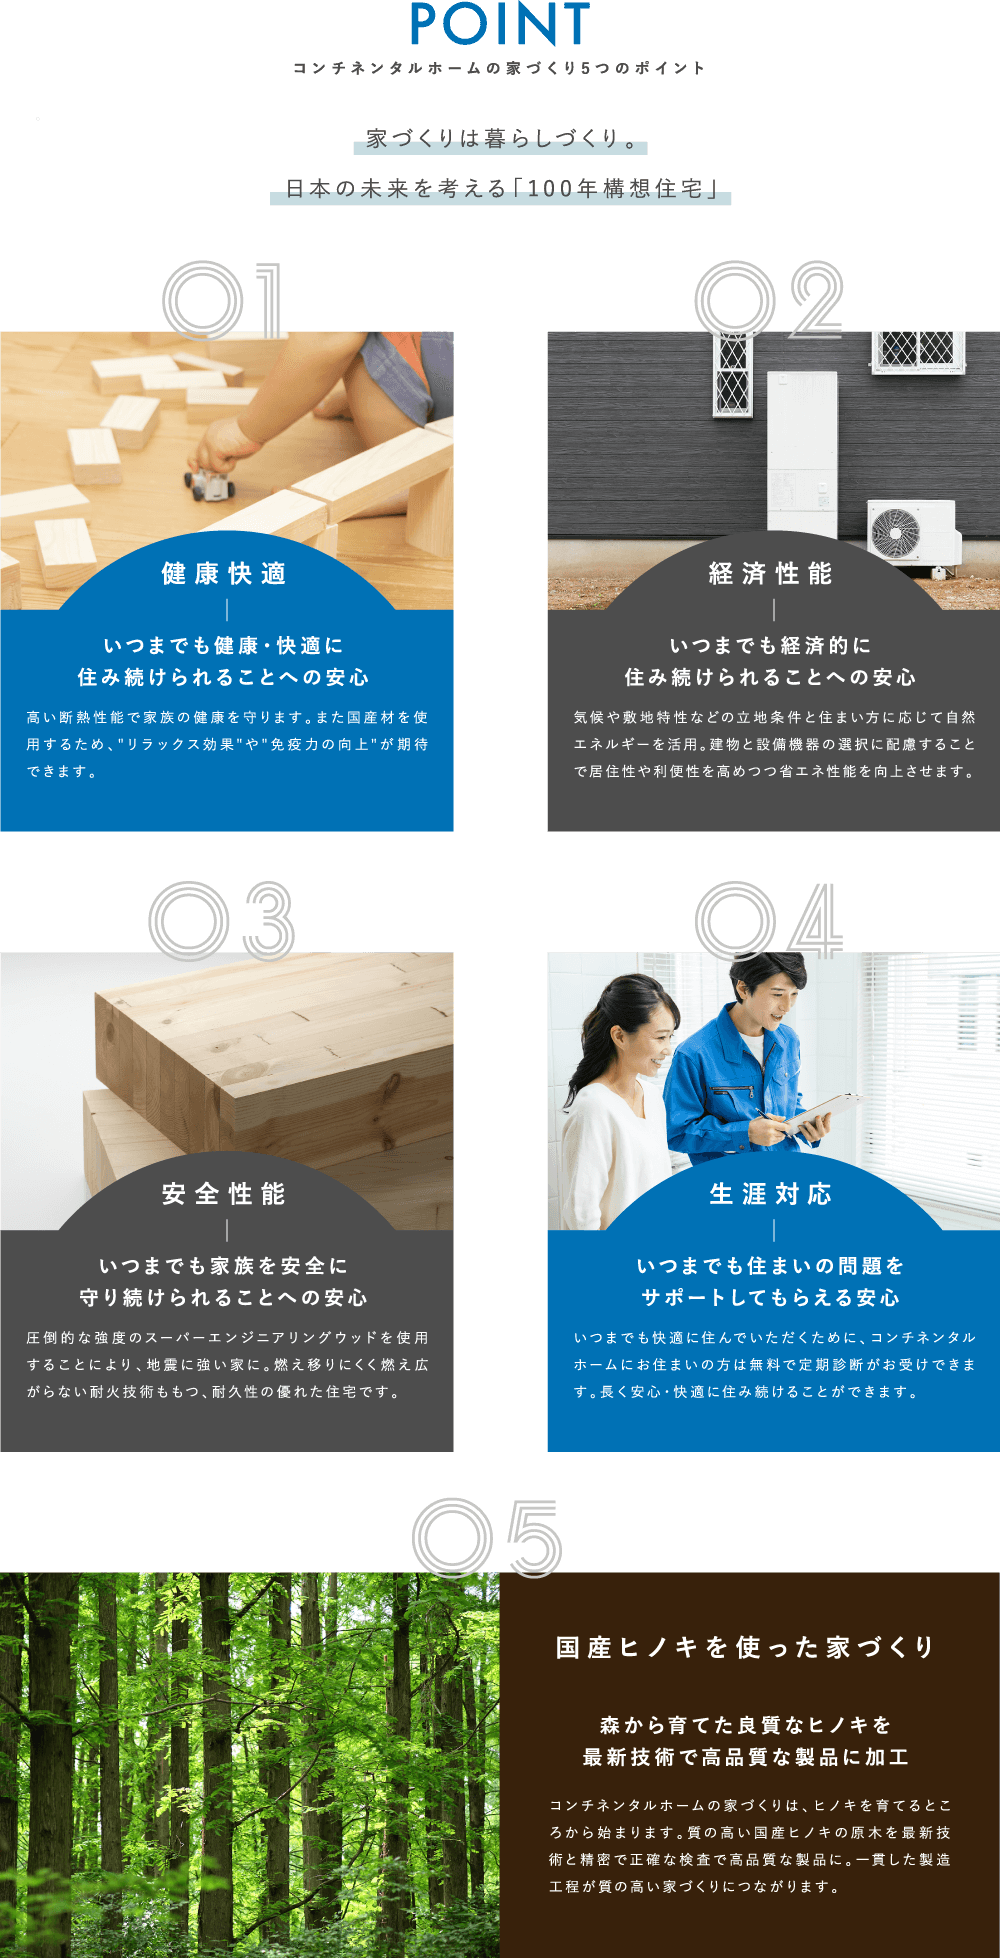 コンチネンタルホームの5つのポイント 家づくりは暮らしづくり。日本の未来を考える「100年構想住宅」